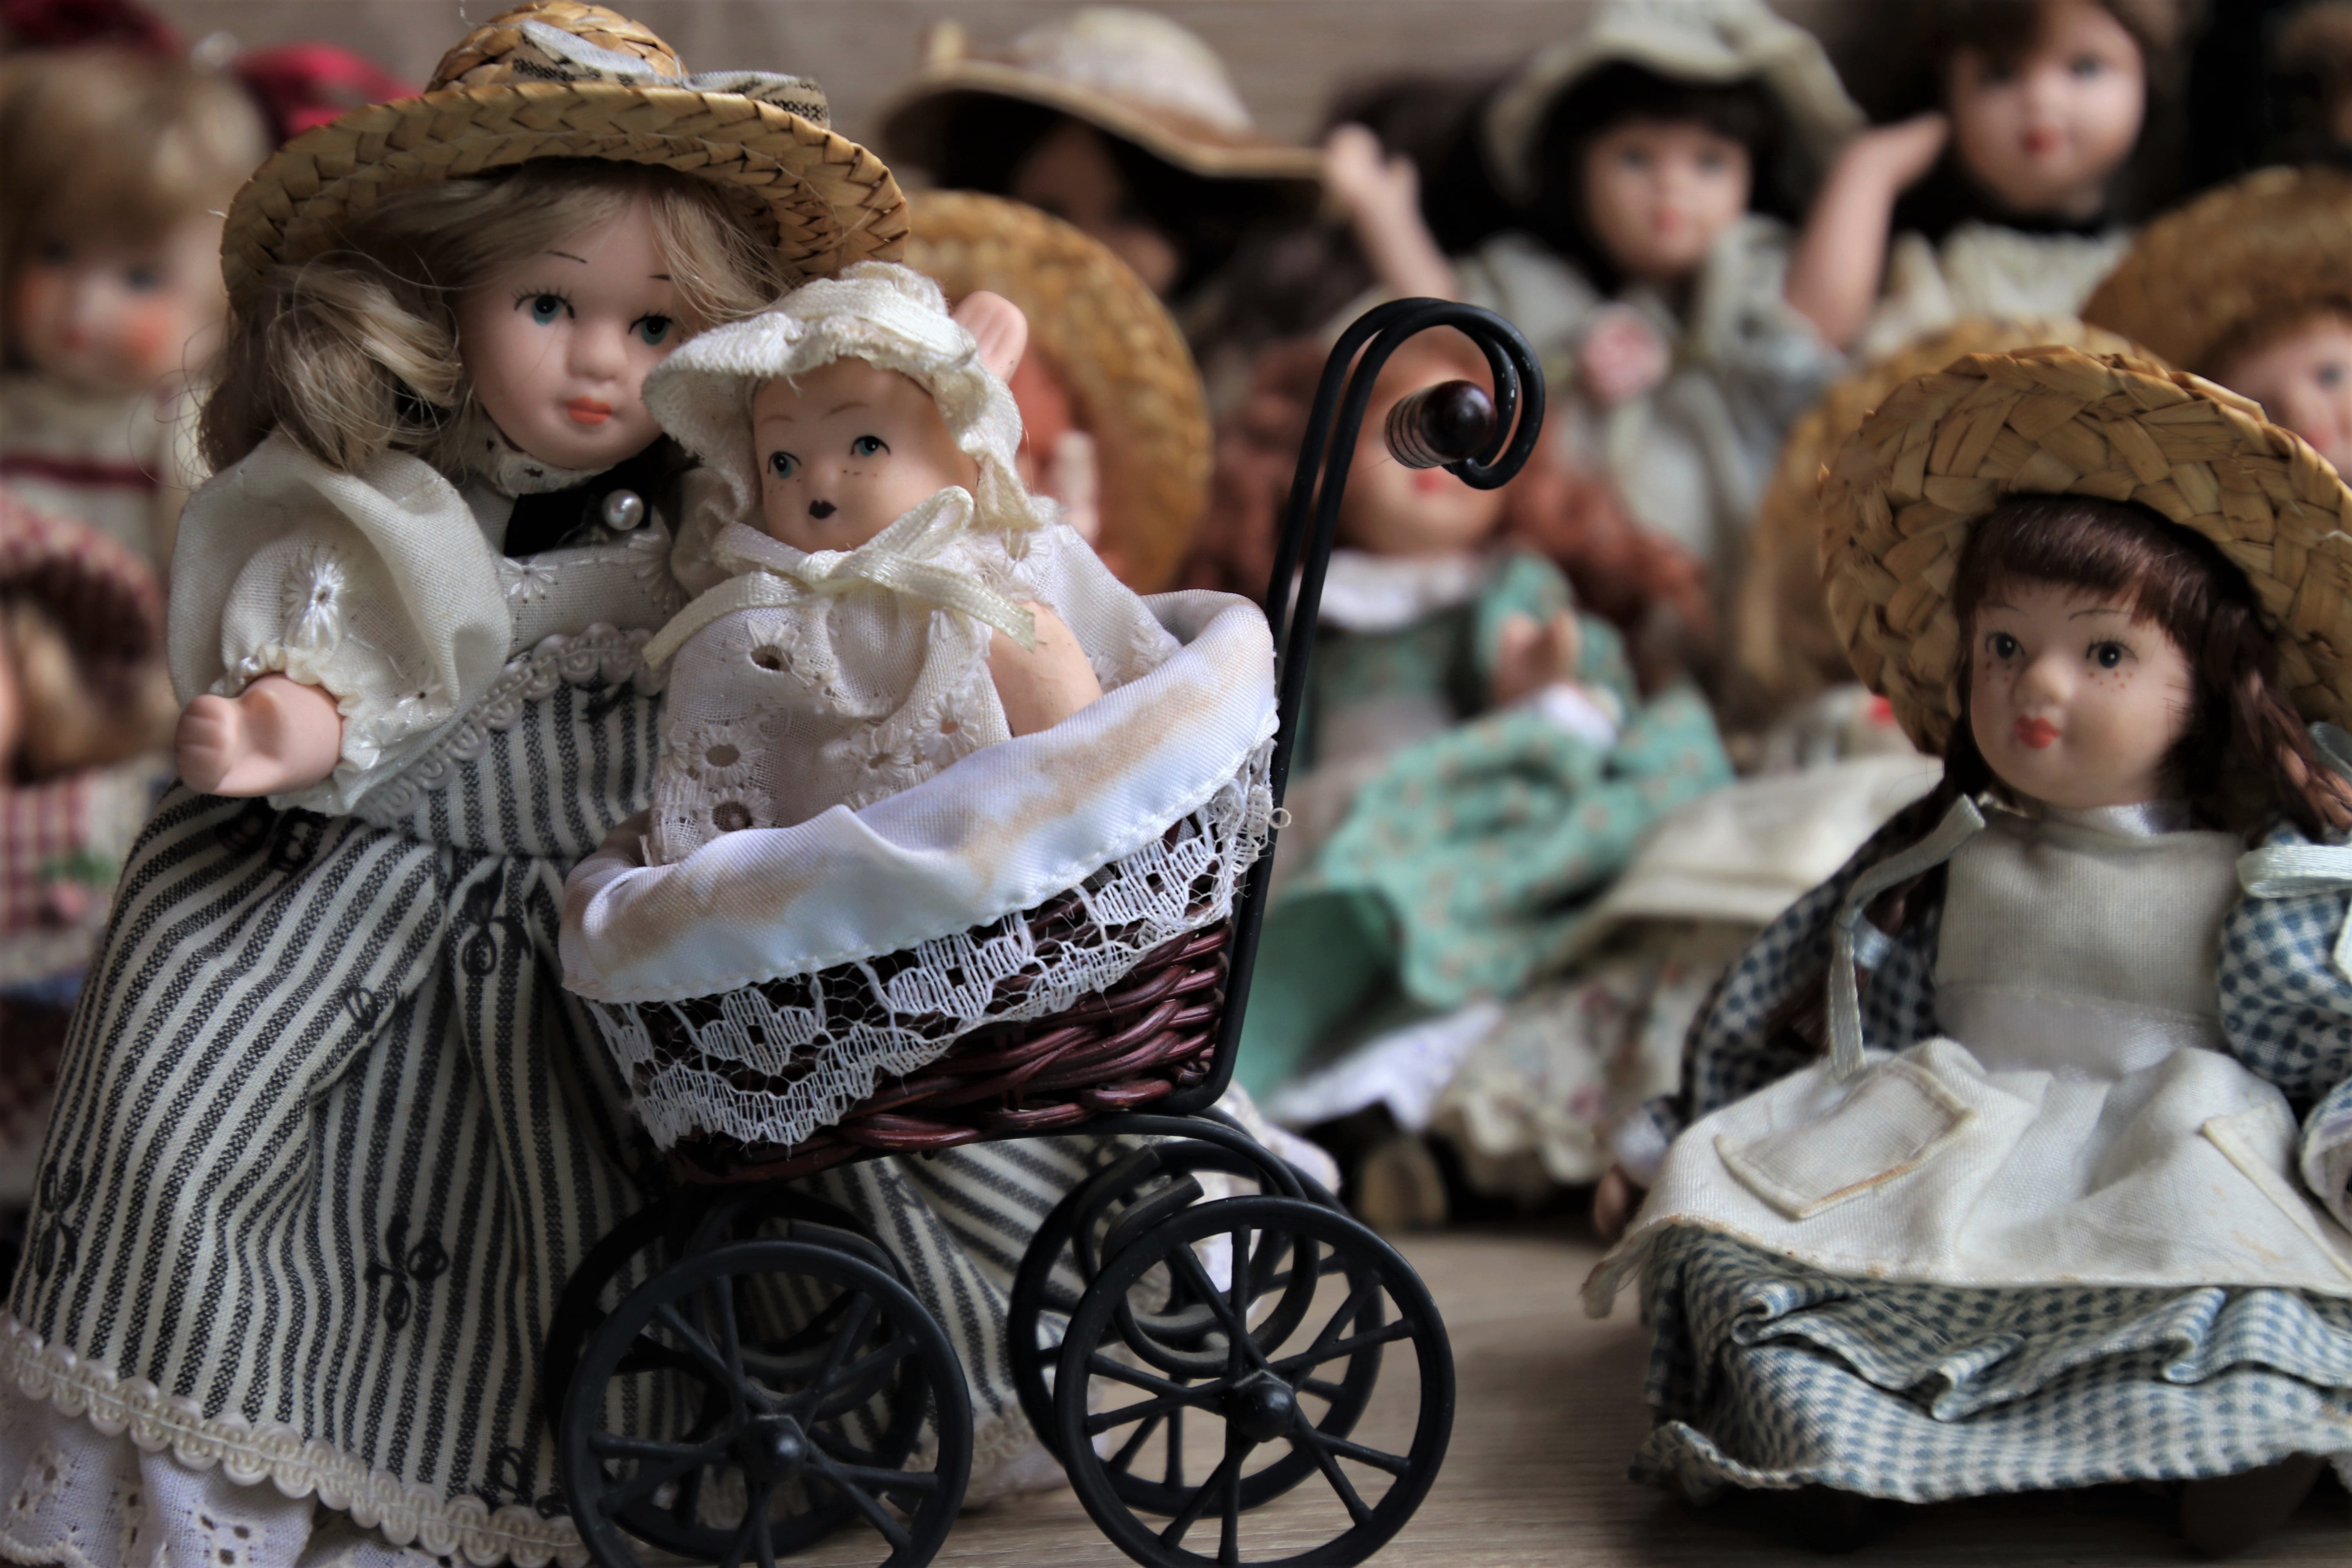 retro, porcelain dolls, stroller, child care, family, stranded